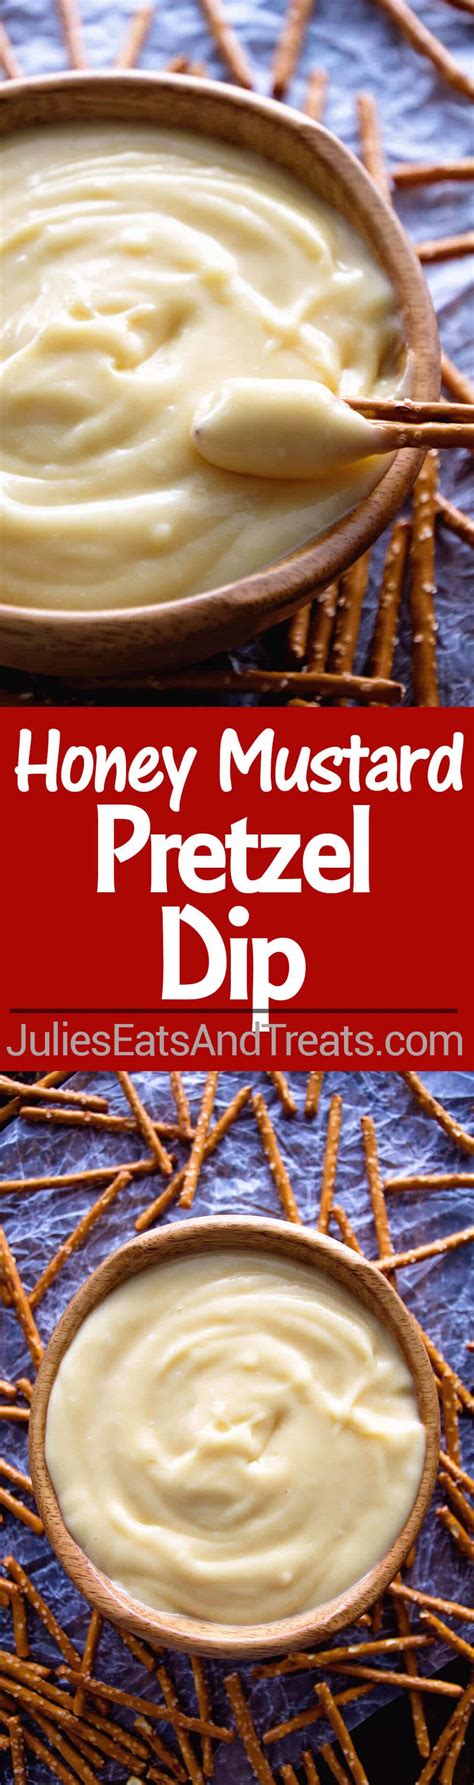 Honey Mustard Pretzel Dip Recipe Julies Eats And Treats